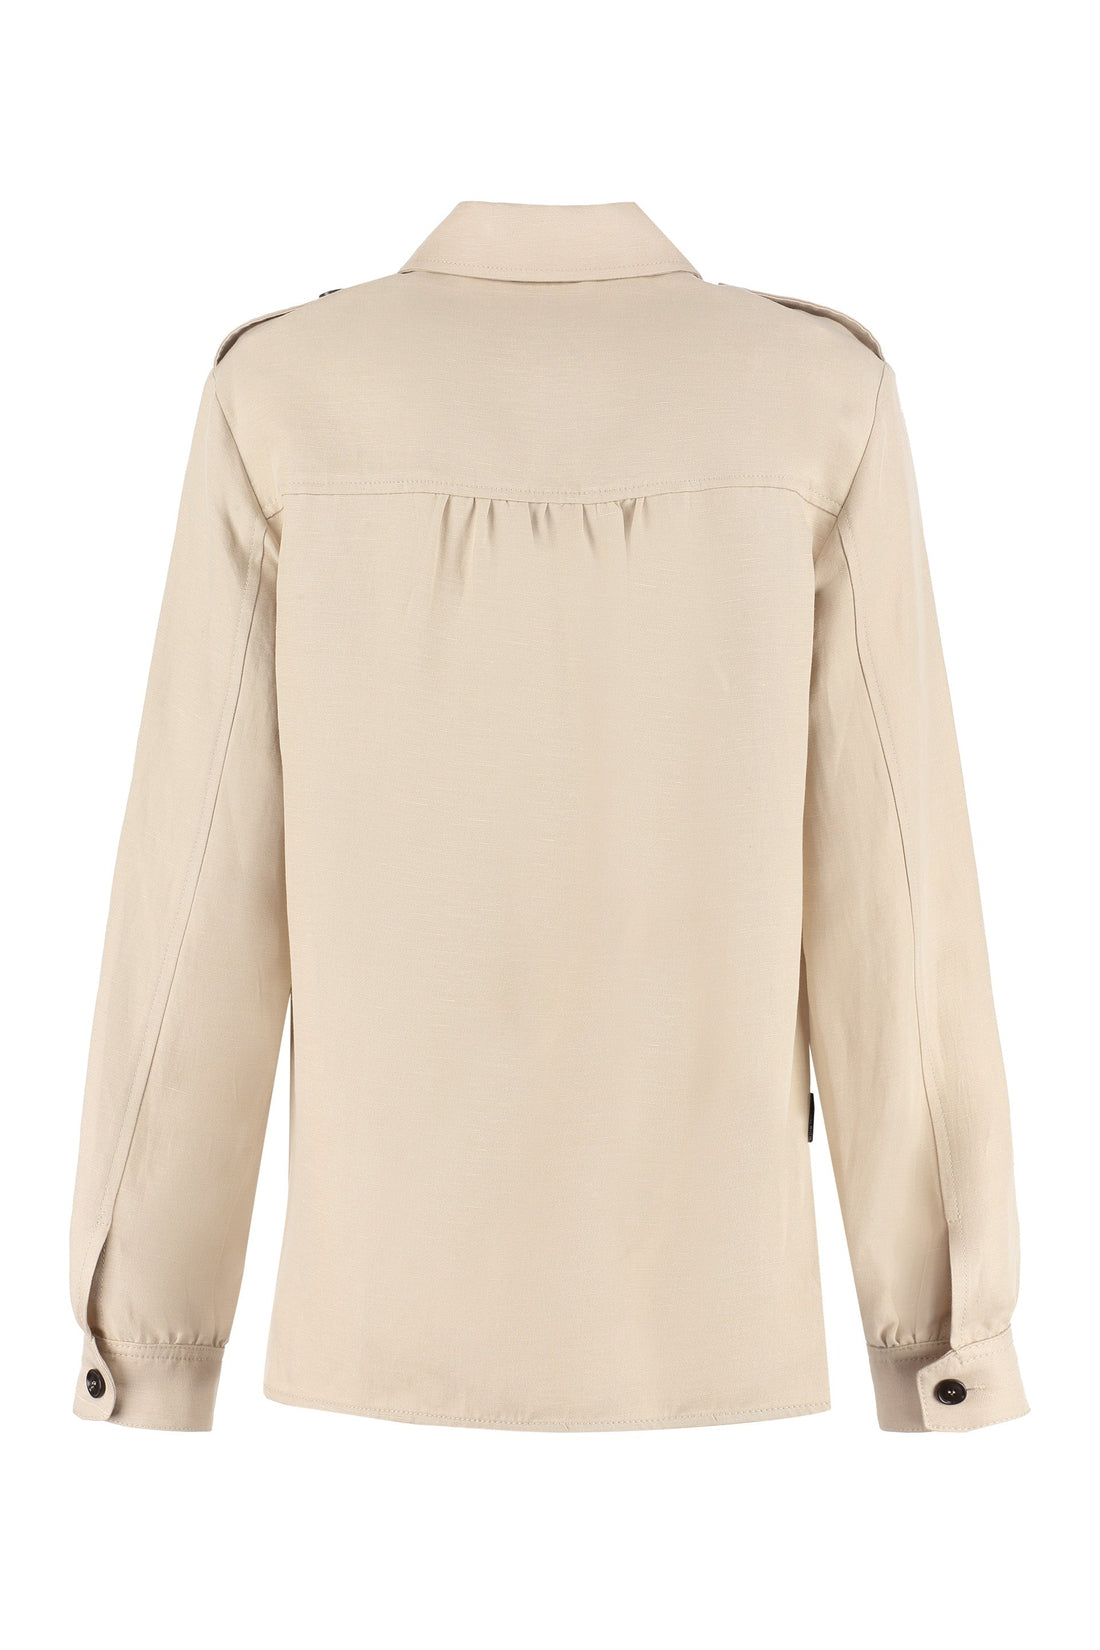 Woolrich-OUTLET-SALE-Long sleeve linen blend shirt-ARCHIVIST